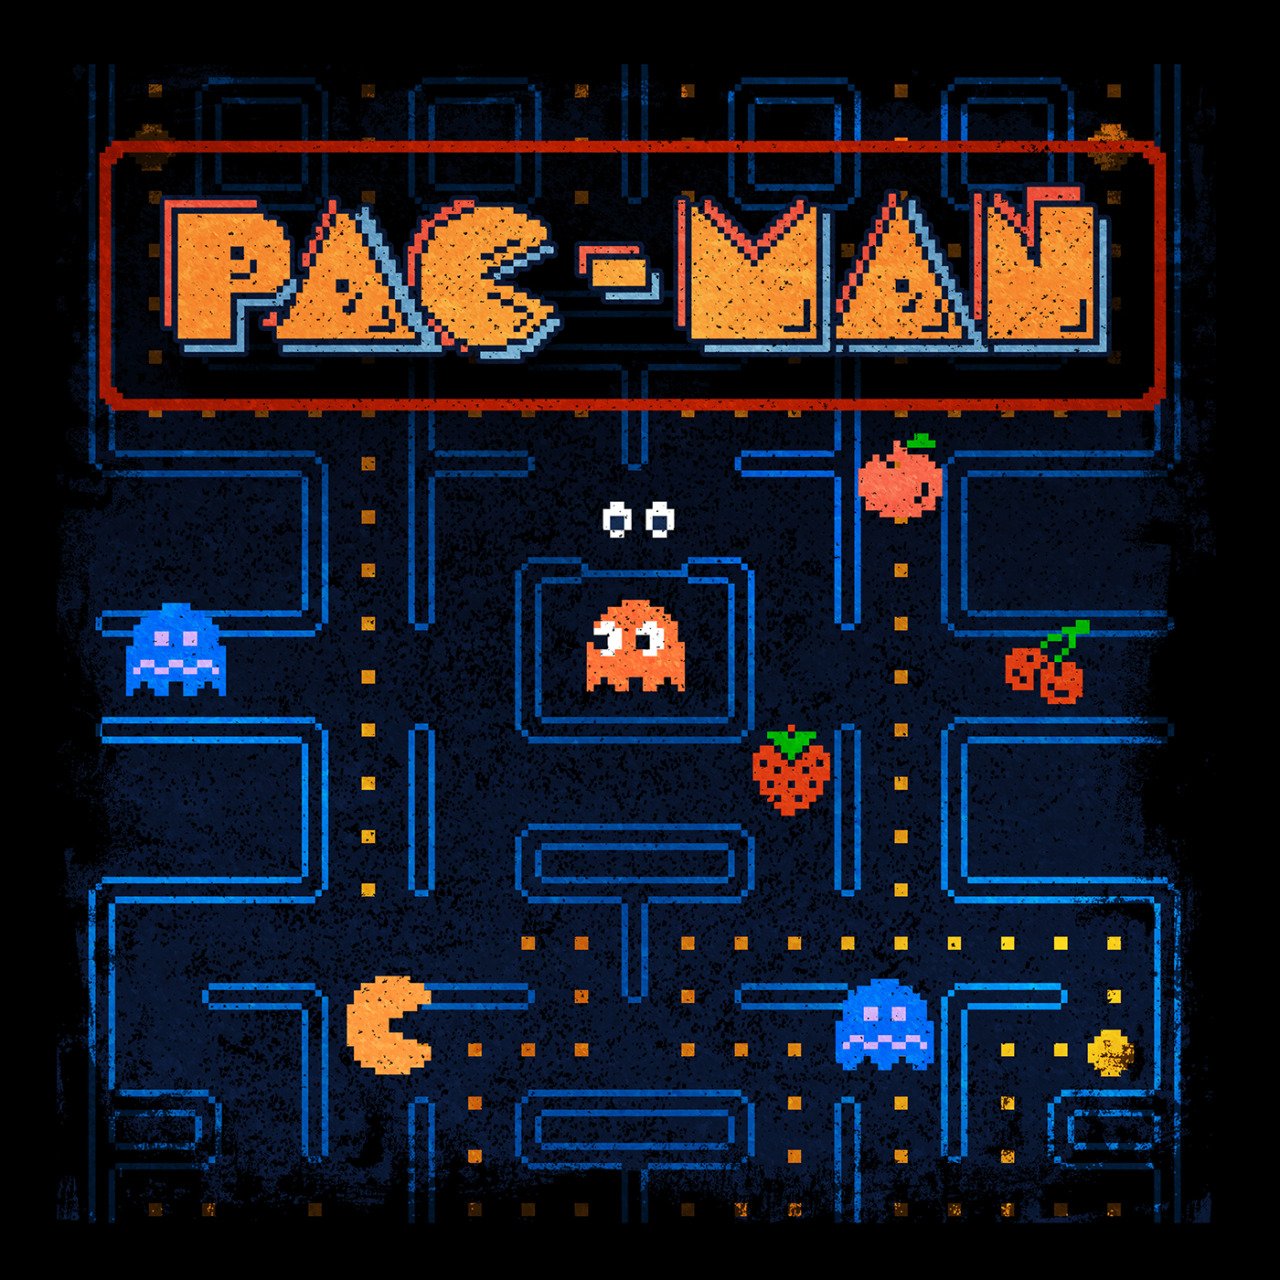 The man пиксельные игры. Пиксельные игры Пакмен. Pac-man Arcade игра. Пакман 8 бит игра. Пакман Денди.